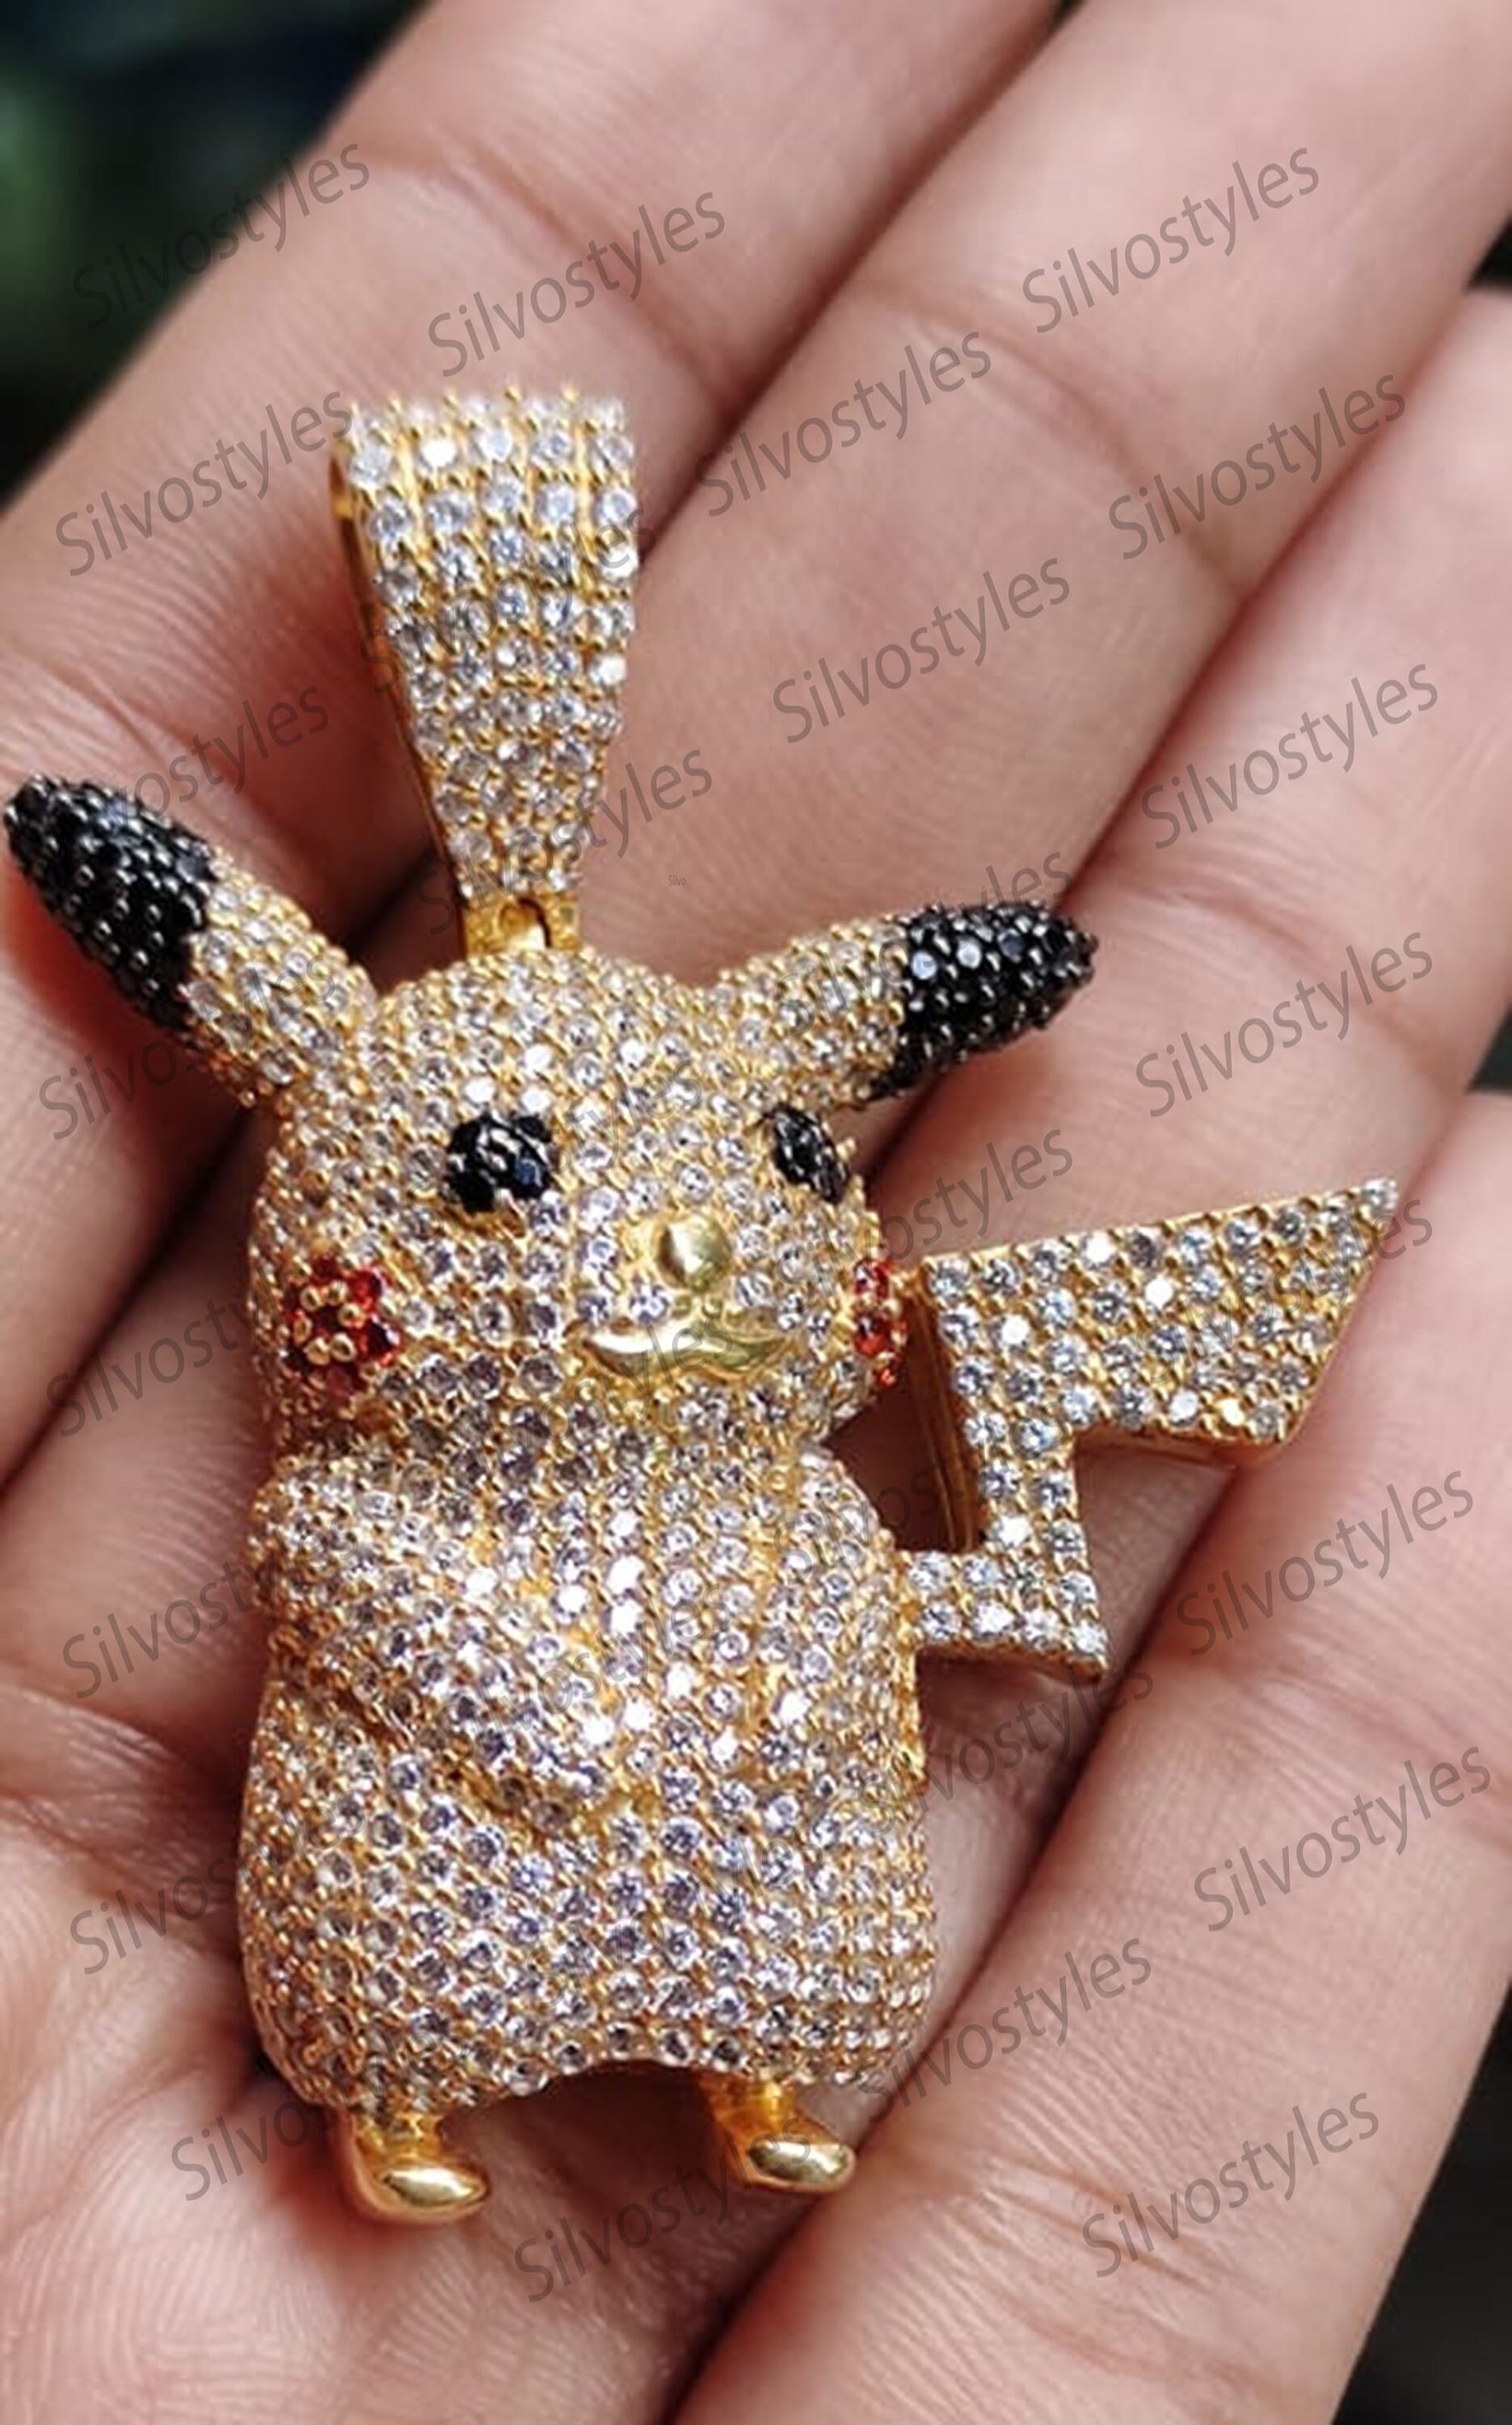 Diamond Pikachu 